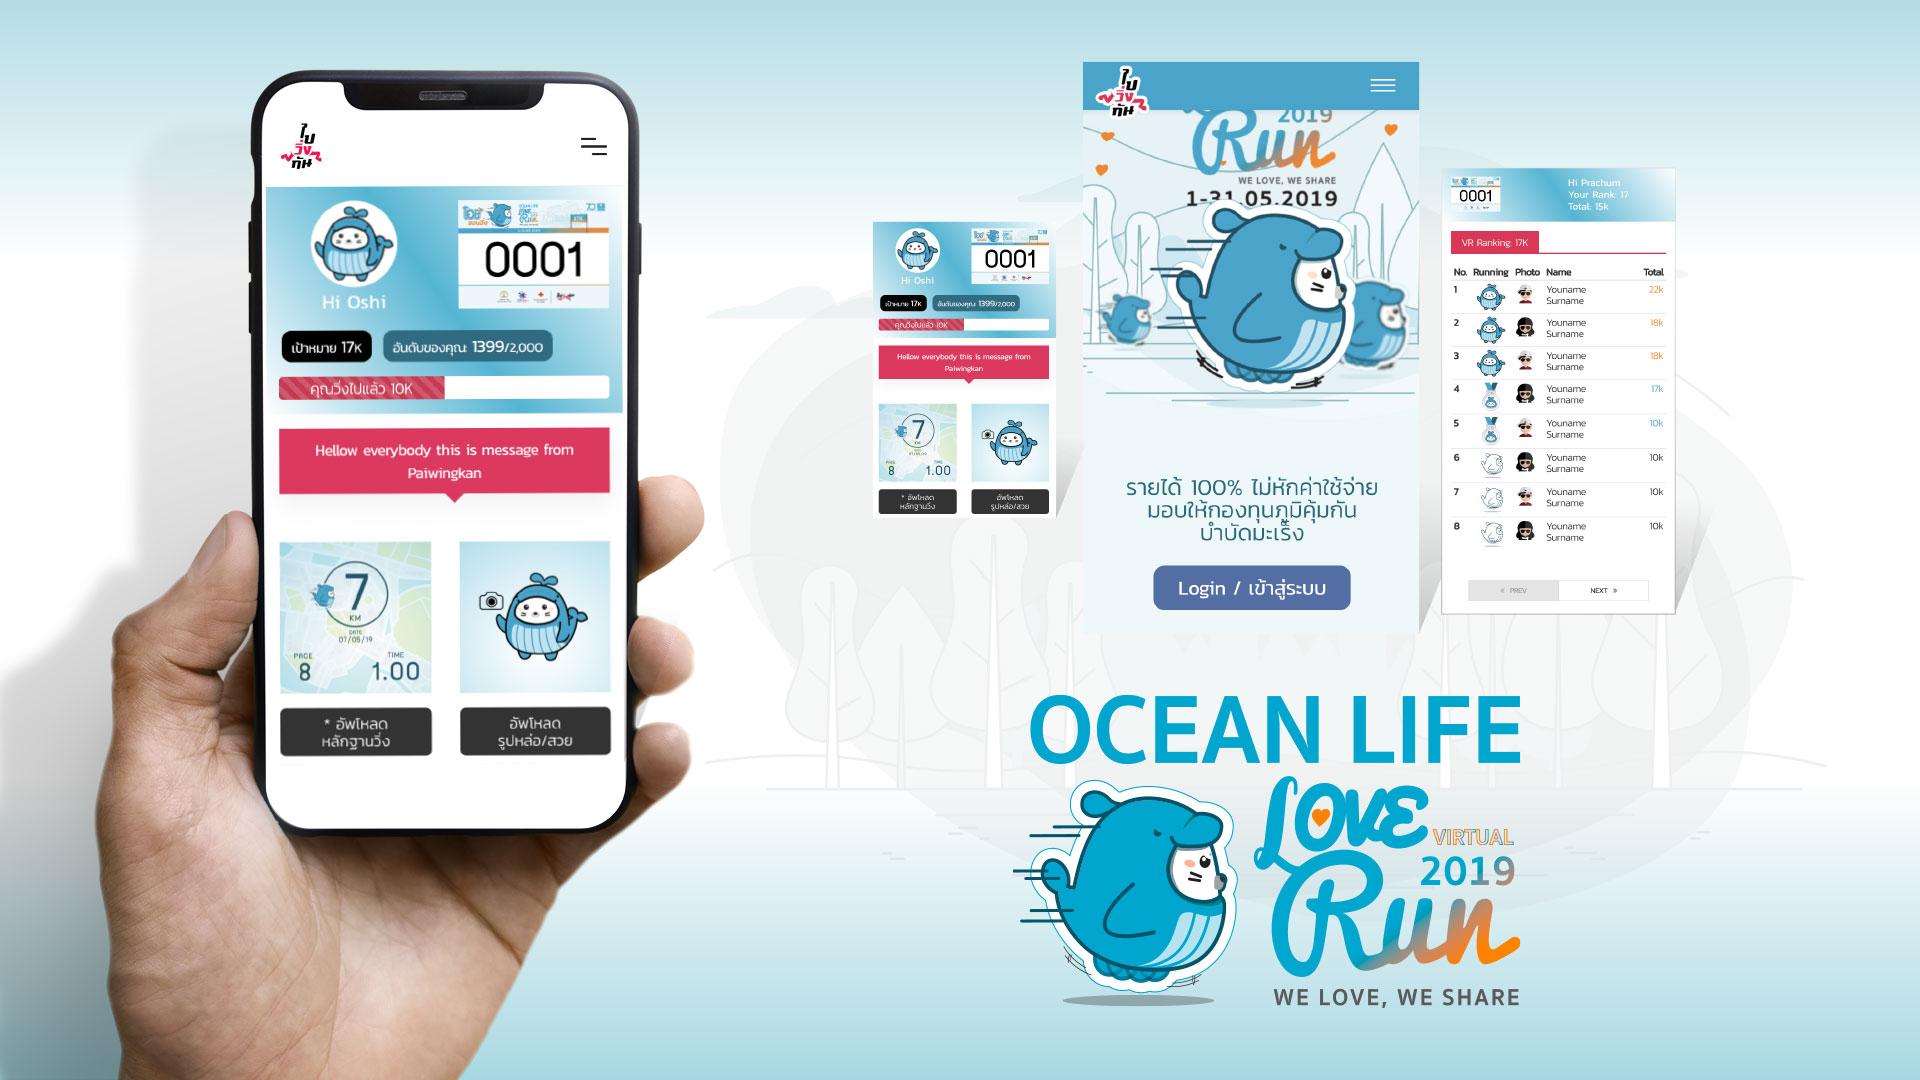 Oceanlife Love Virtual Run 2019